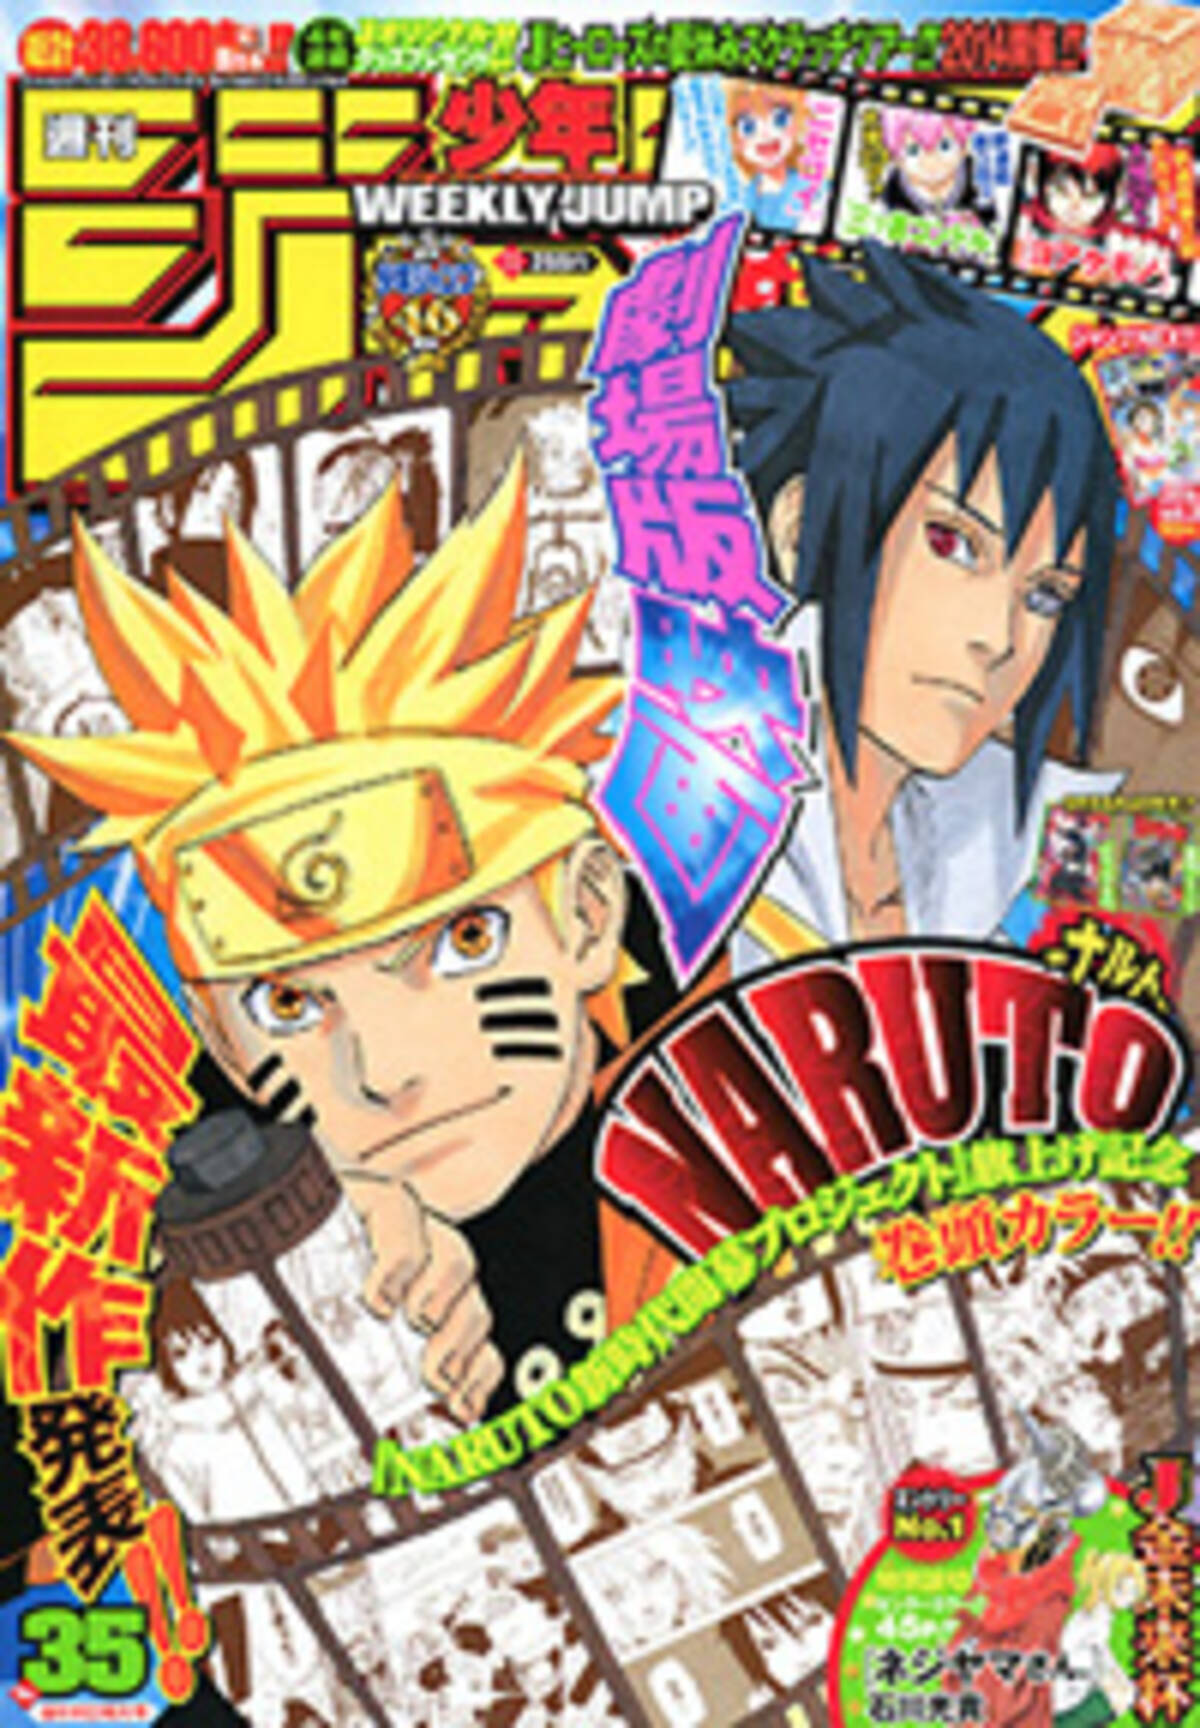 Naruto ナルト 展 開催が決定 ワールドトリガー の広報戦略も気になる 週刊少年ジャンプ 14年7月28日 エキサイトニュース